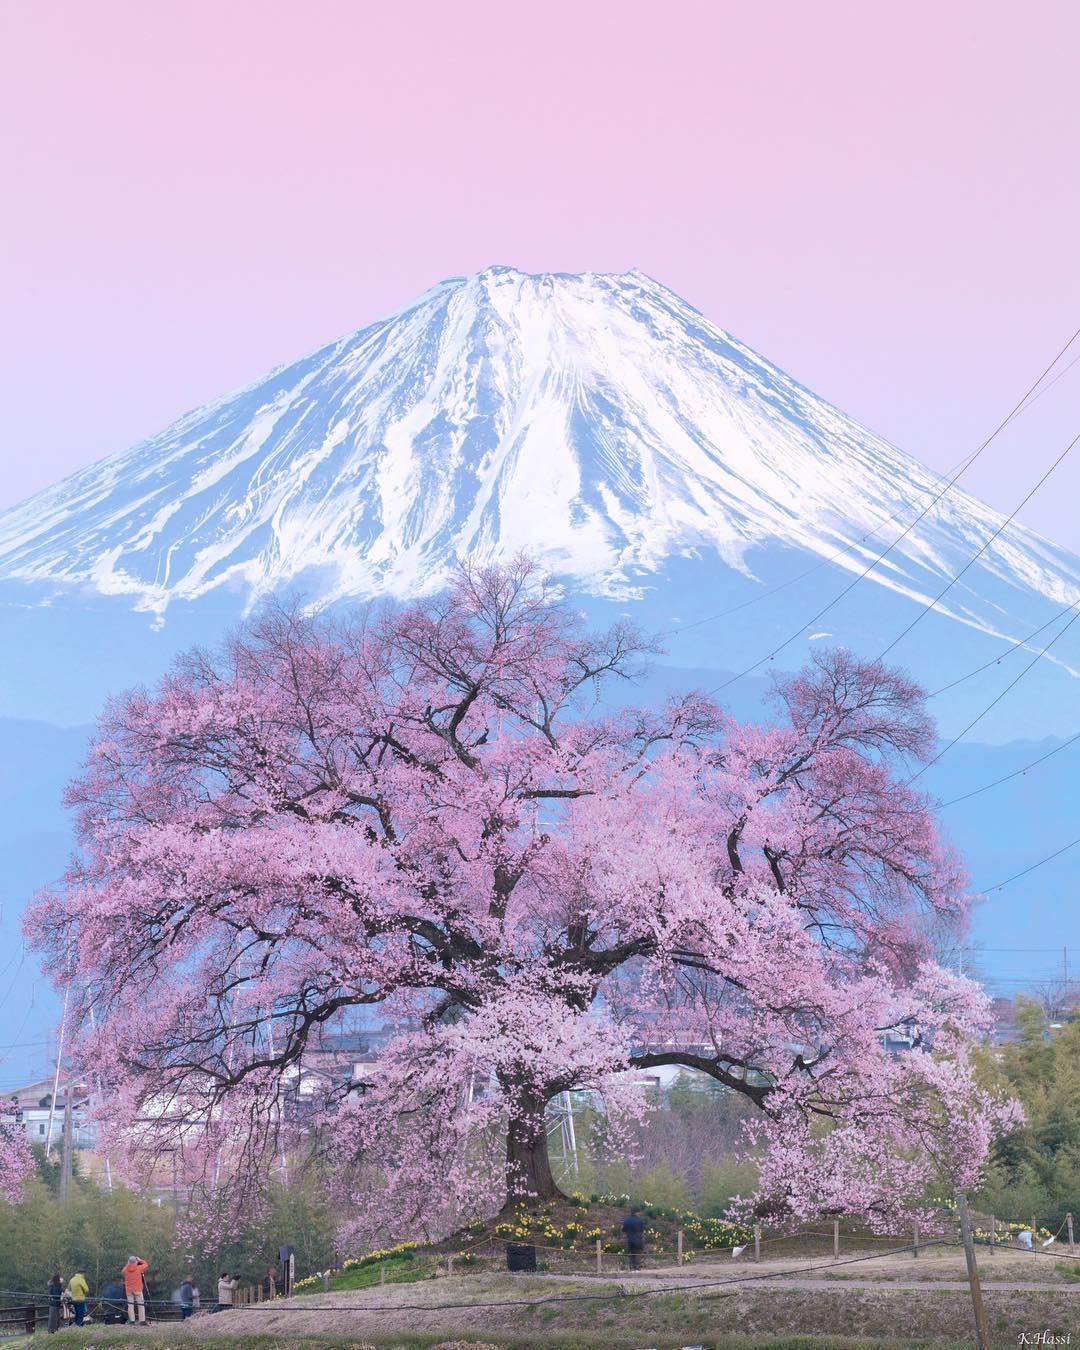 Blooming Sakura tree at Mount Fuji, Japan (by Kenji Hashiba)